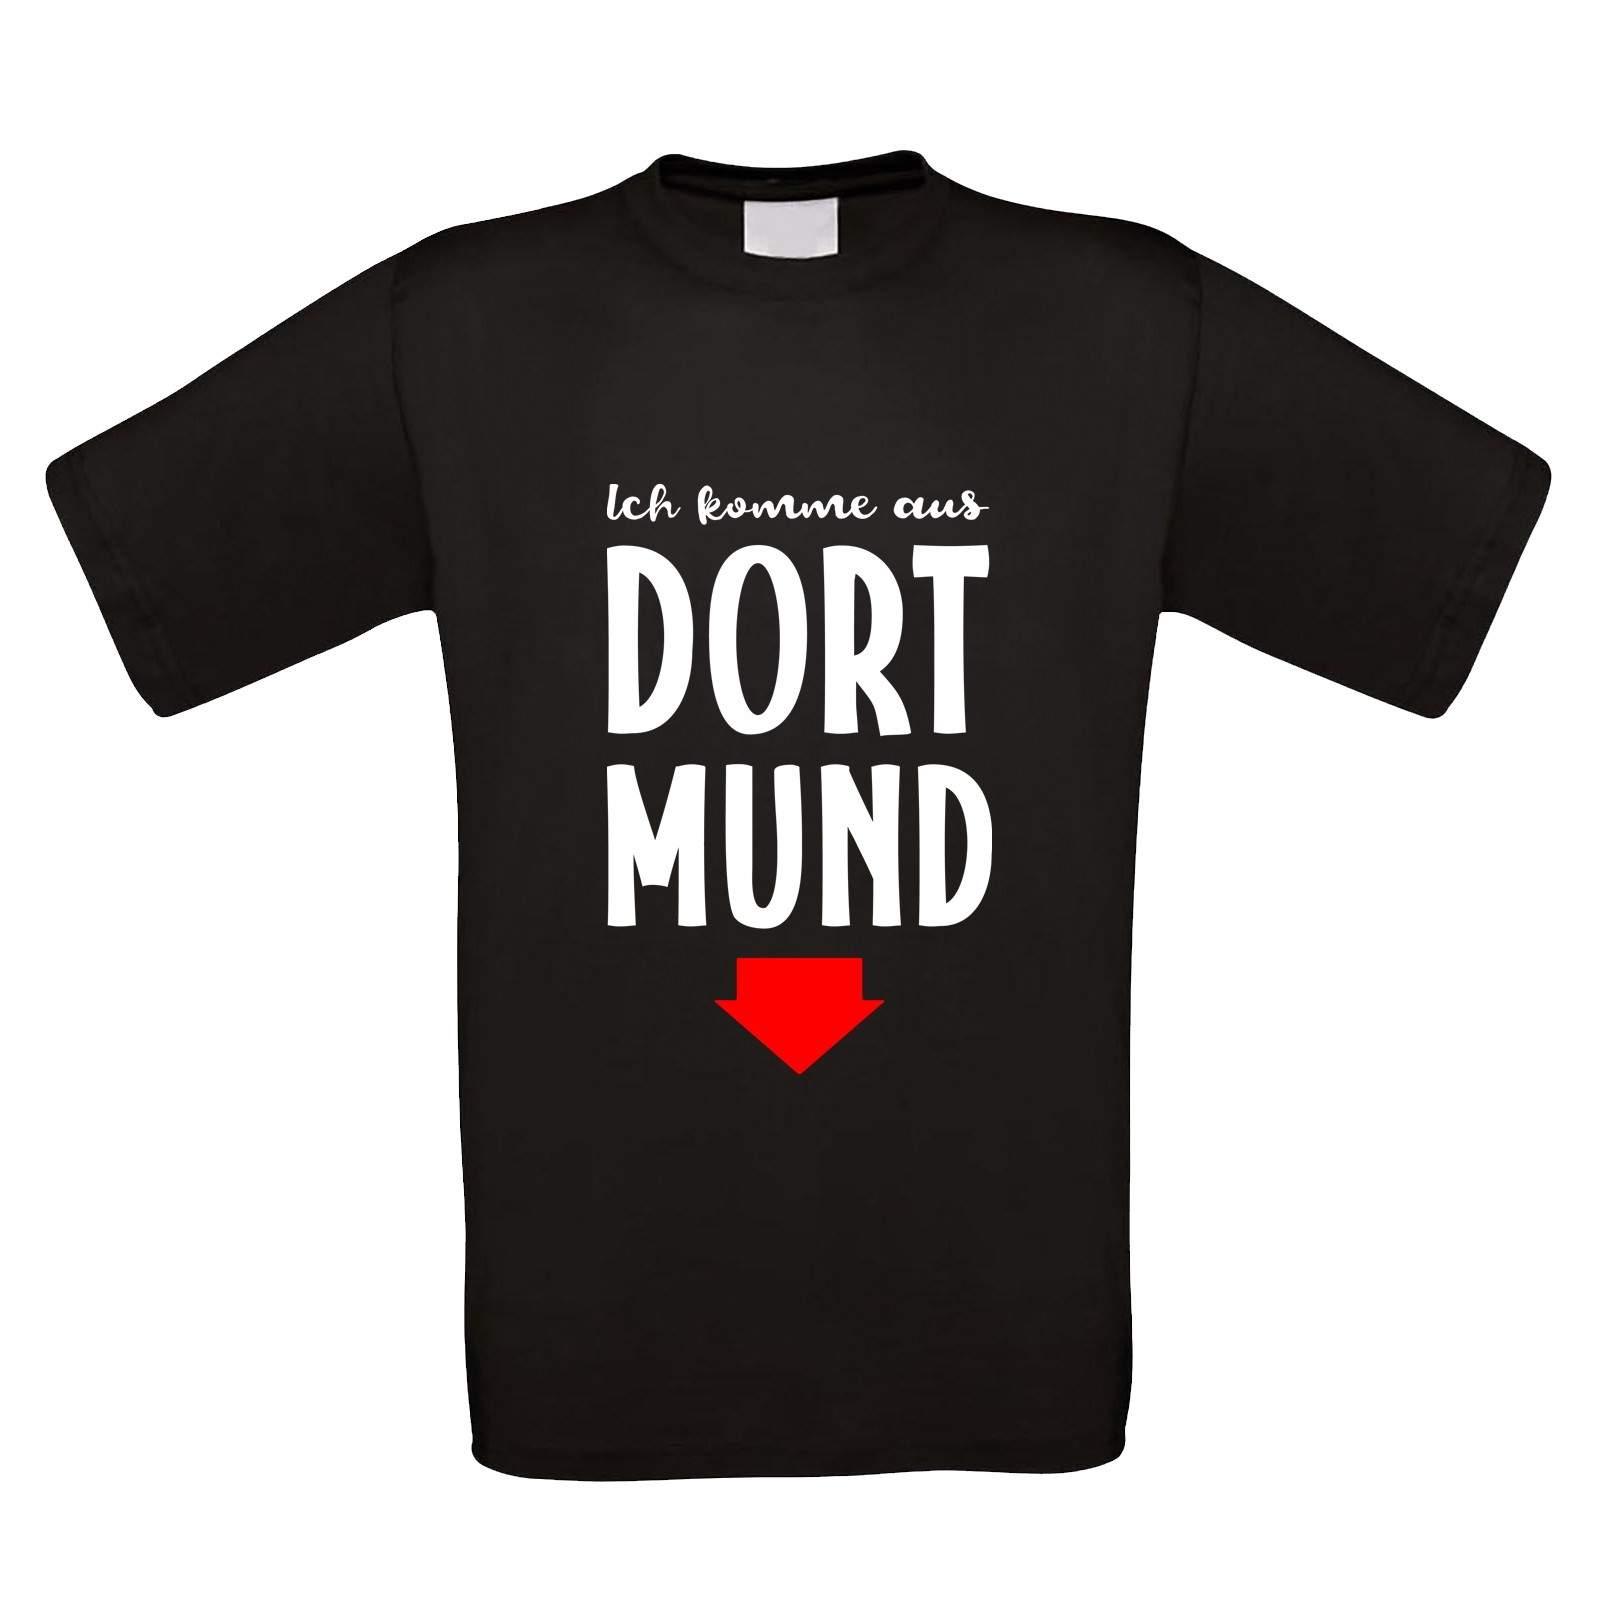 Funshirt weiß oder schwarz, als Tanktop oder Shirt - Dortmund